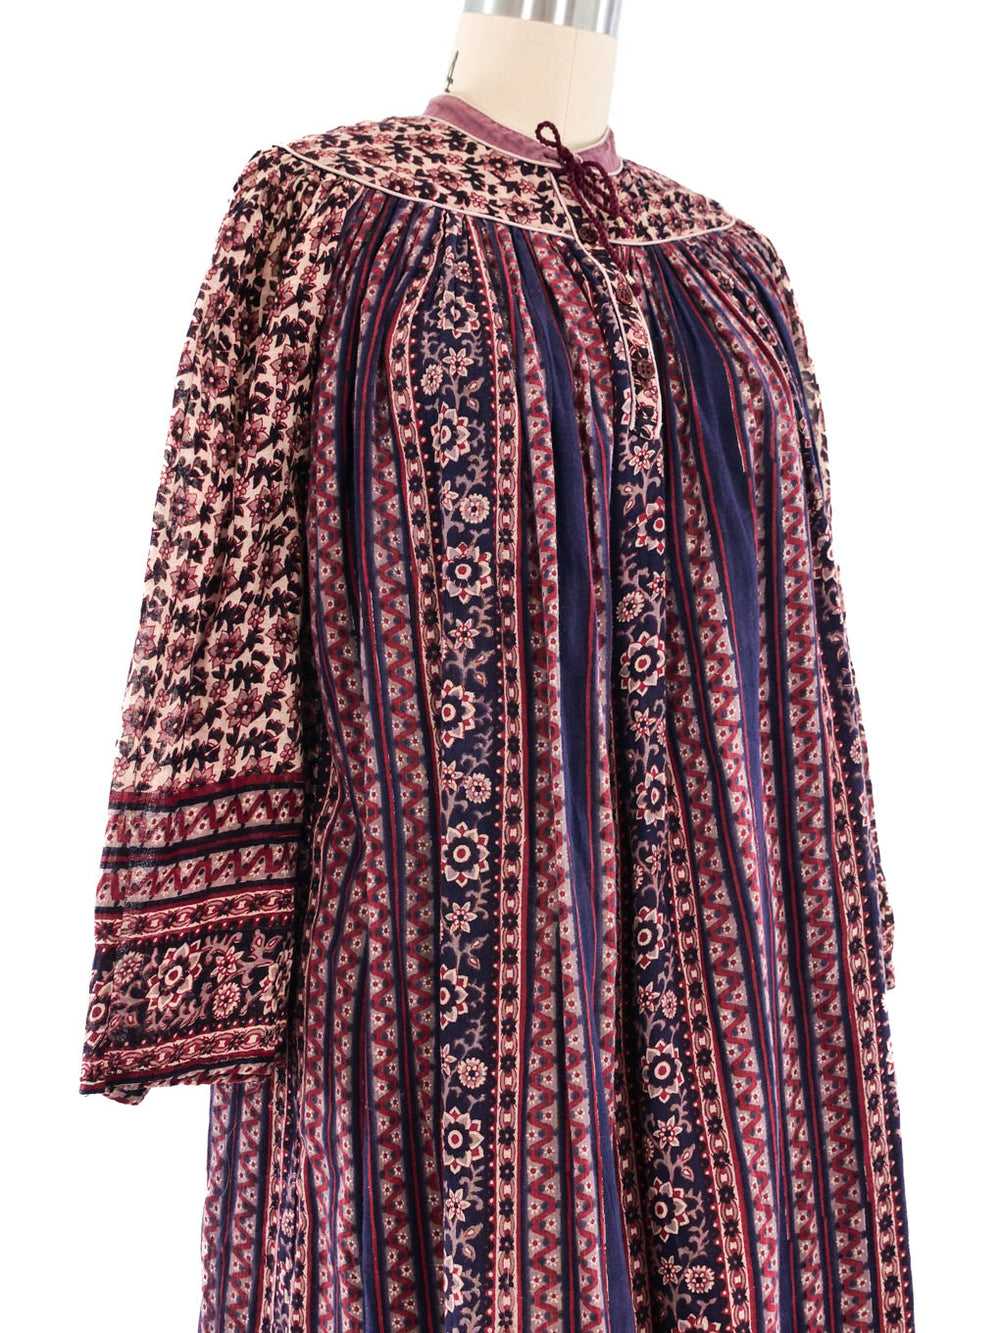 Cotton Gauze Indian Dress - image 2